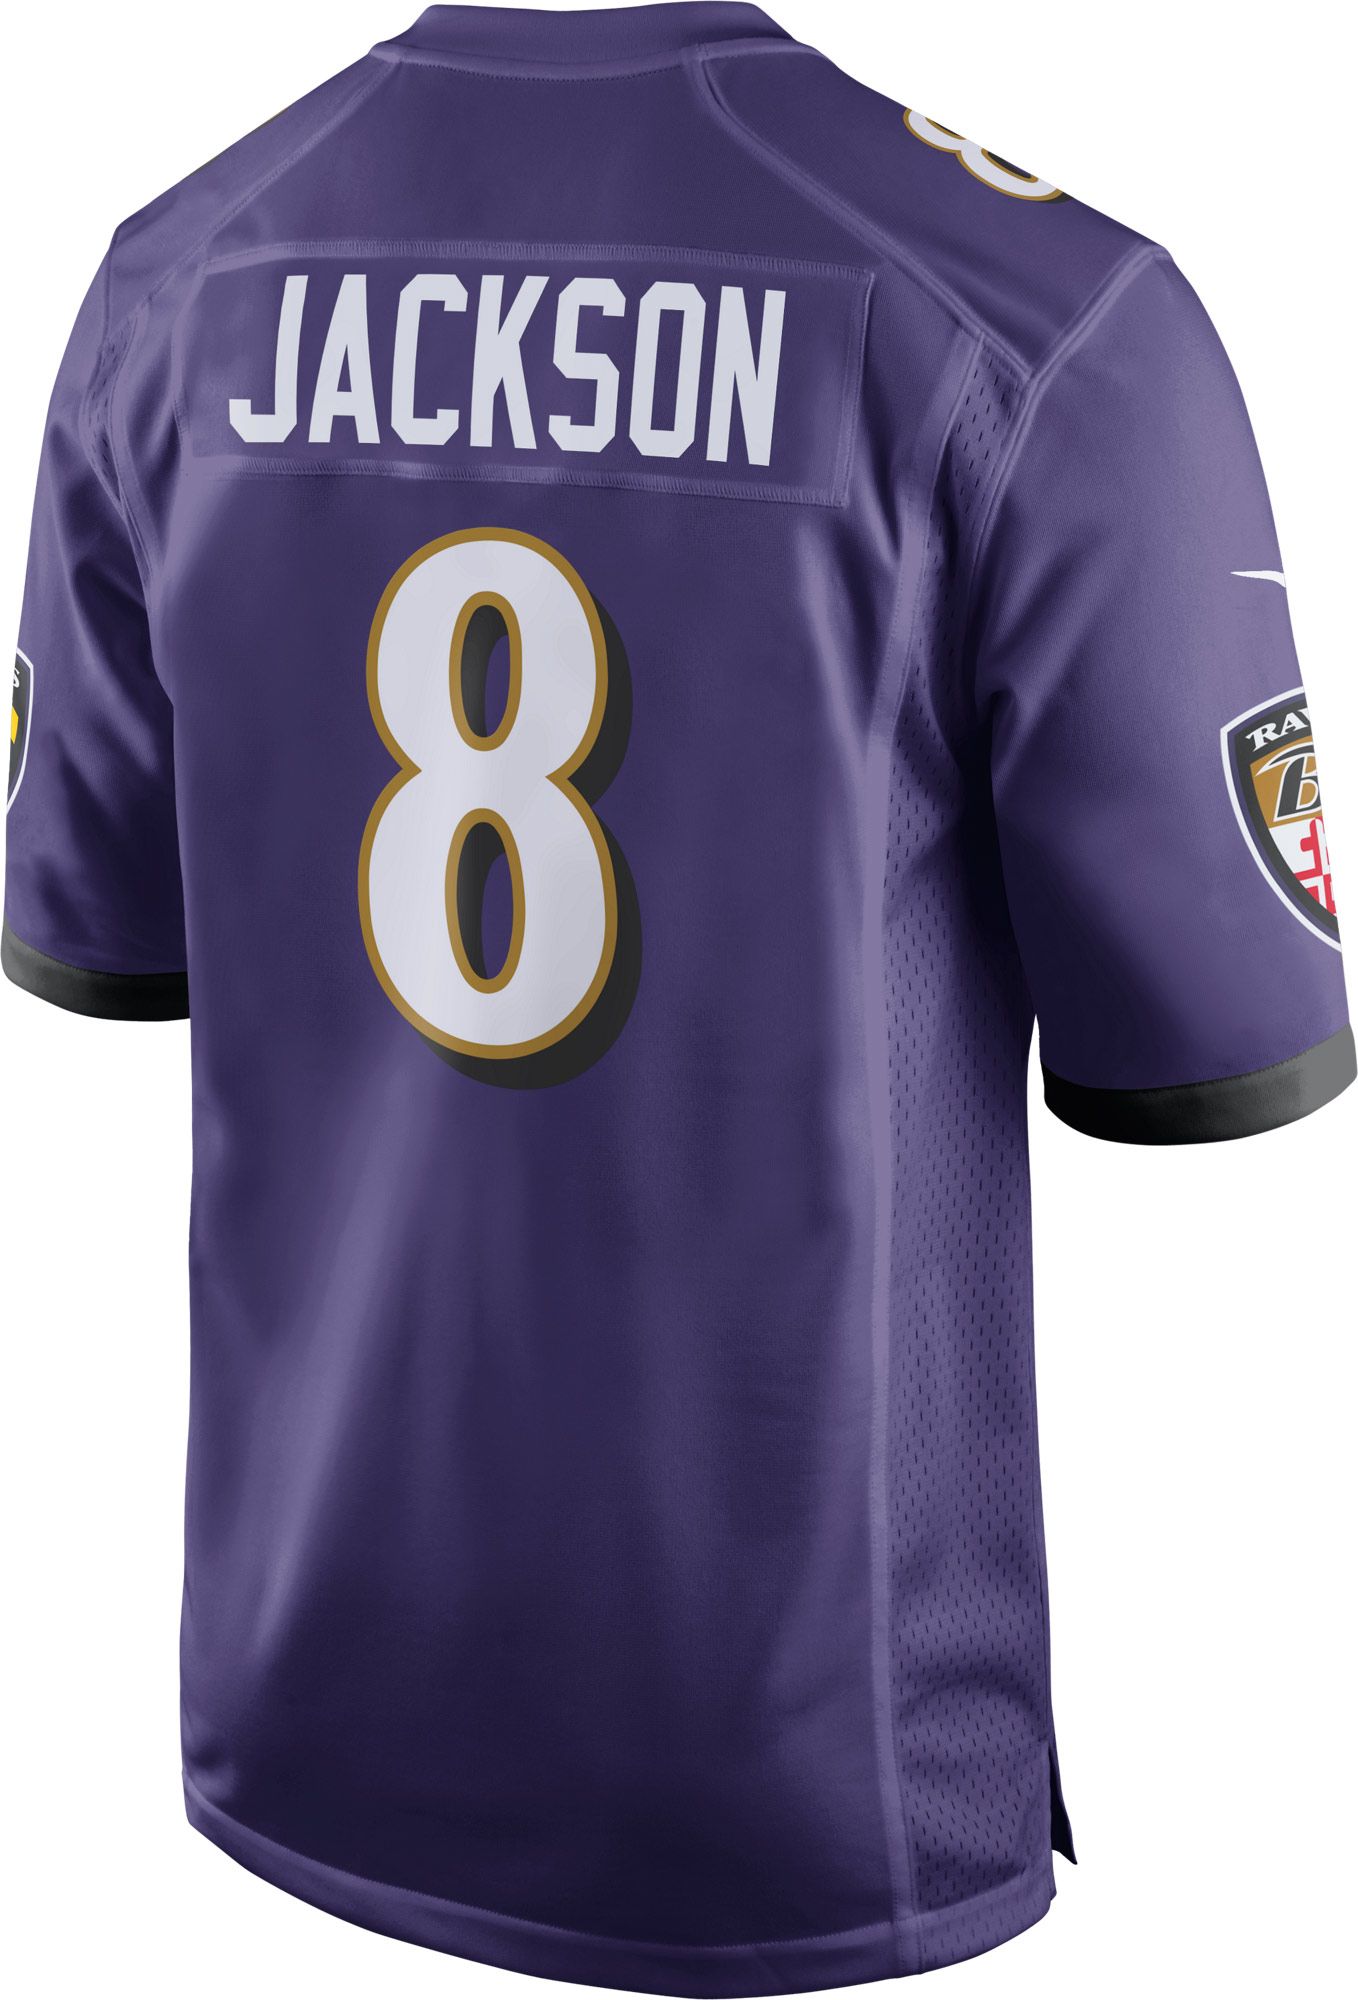 lamar jackson stitched ravens jersey